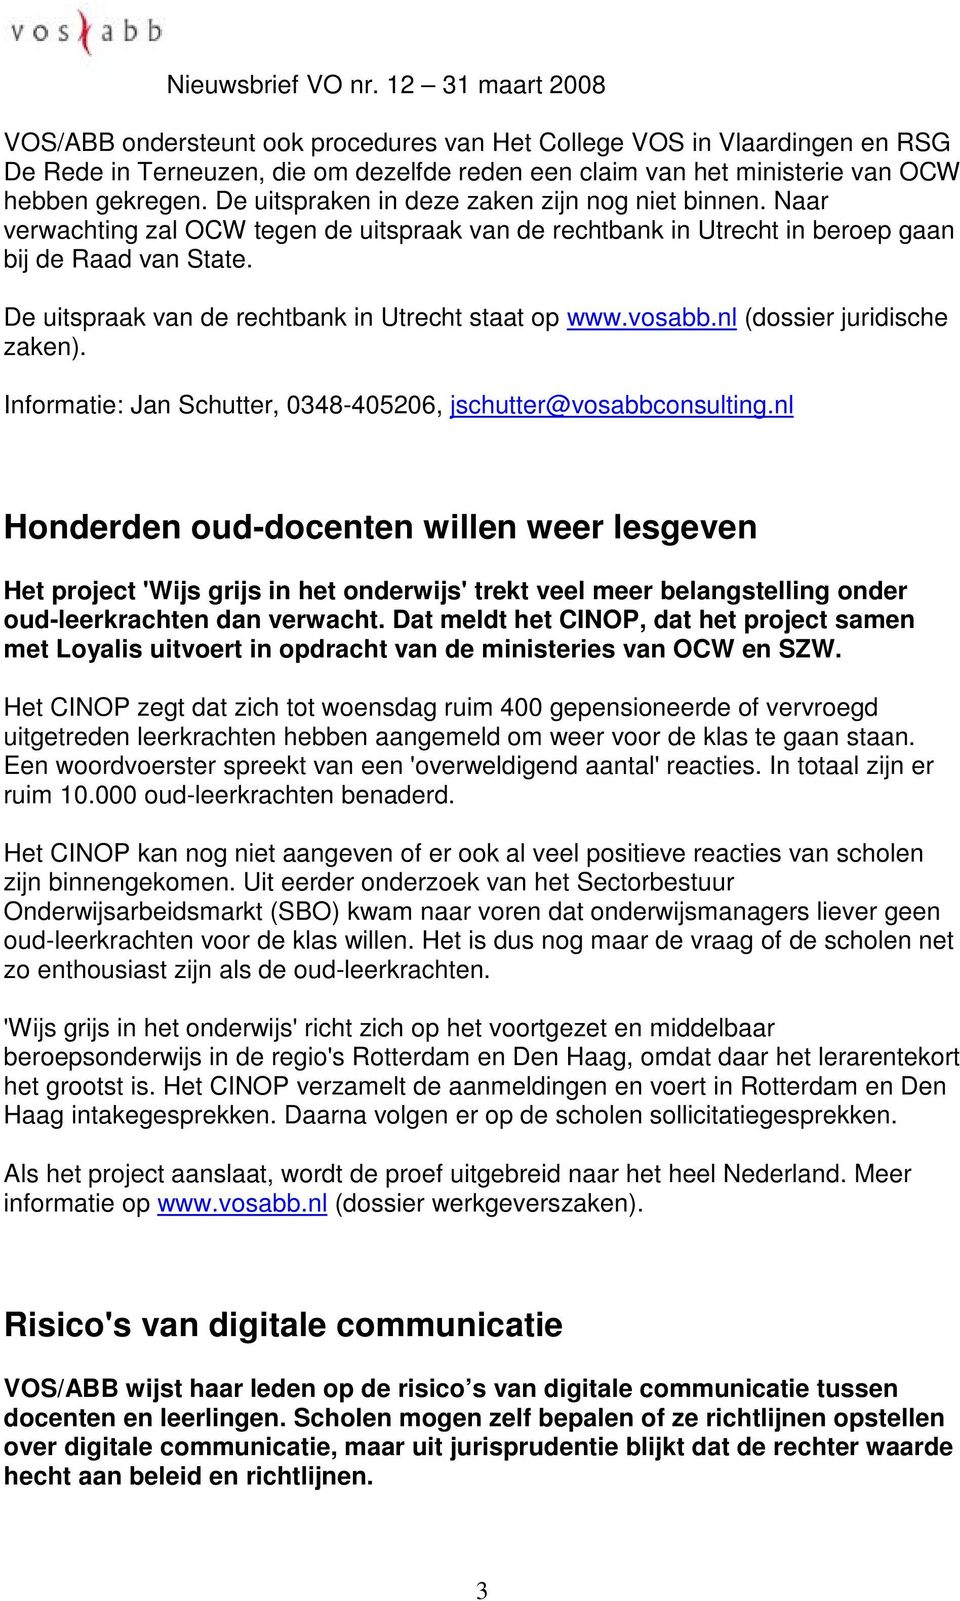 De uitspraak van de rechtbank in Utrecht staat op www.vosabb.nl (dossier juridische zaken). Informatie: Jan Schutter, 0348-405206, jschutter@vosabbconsulting.